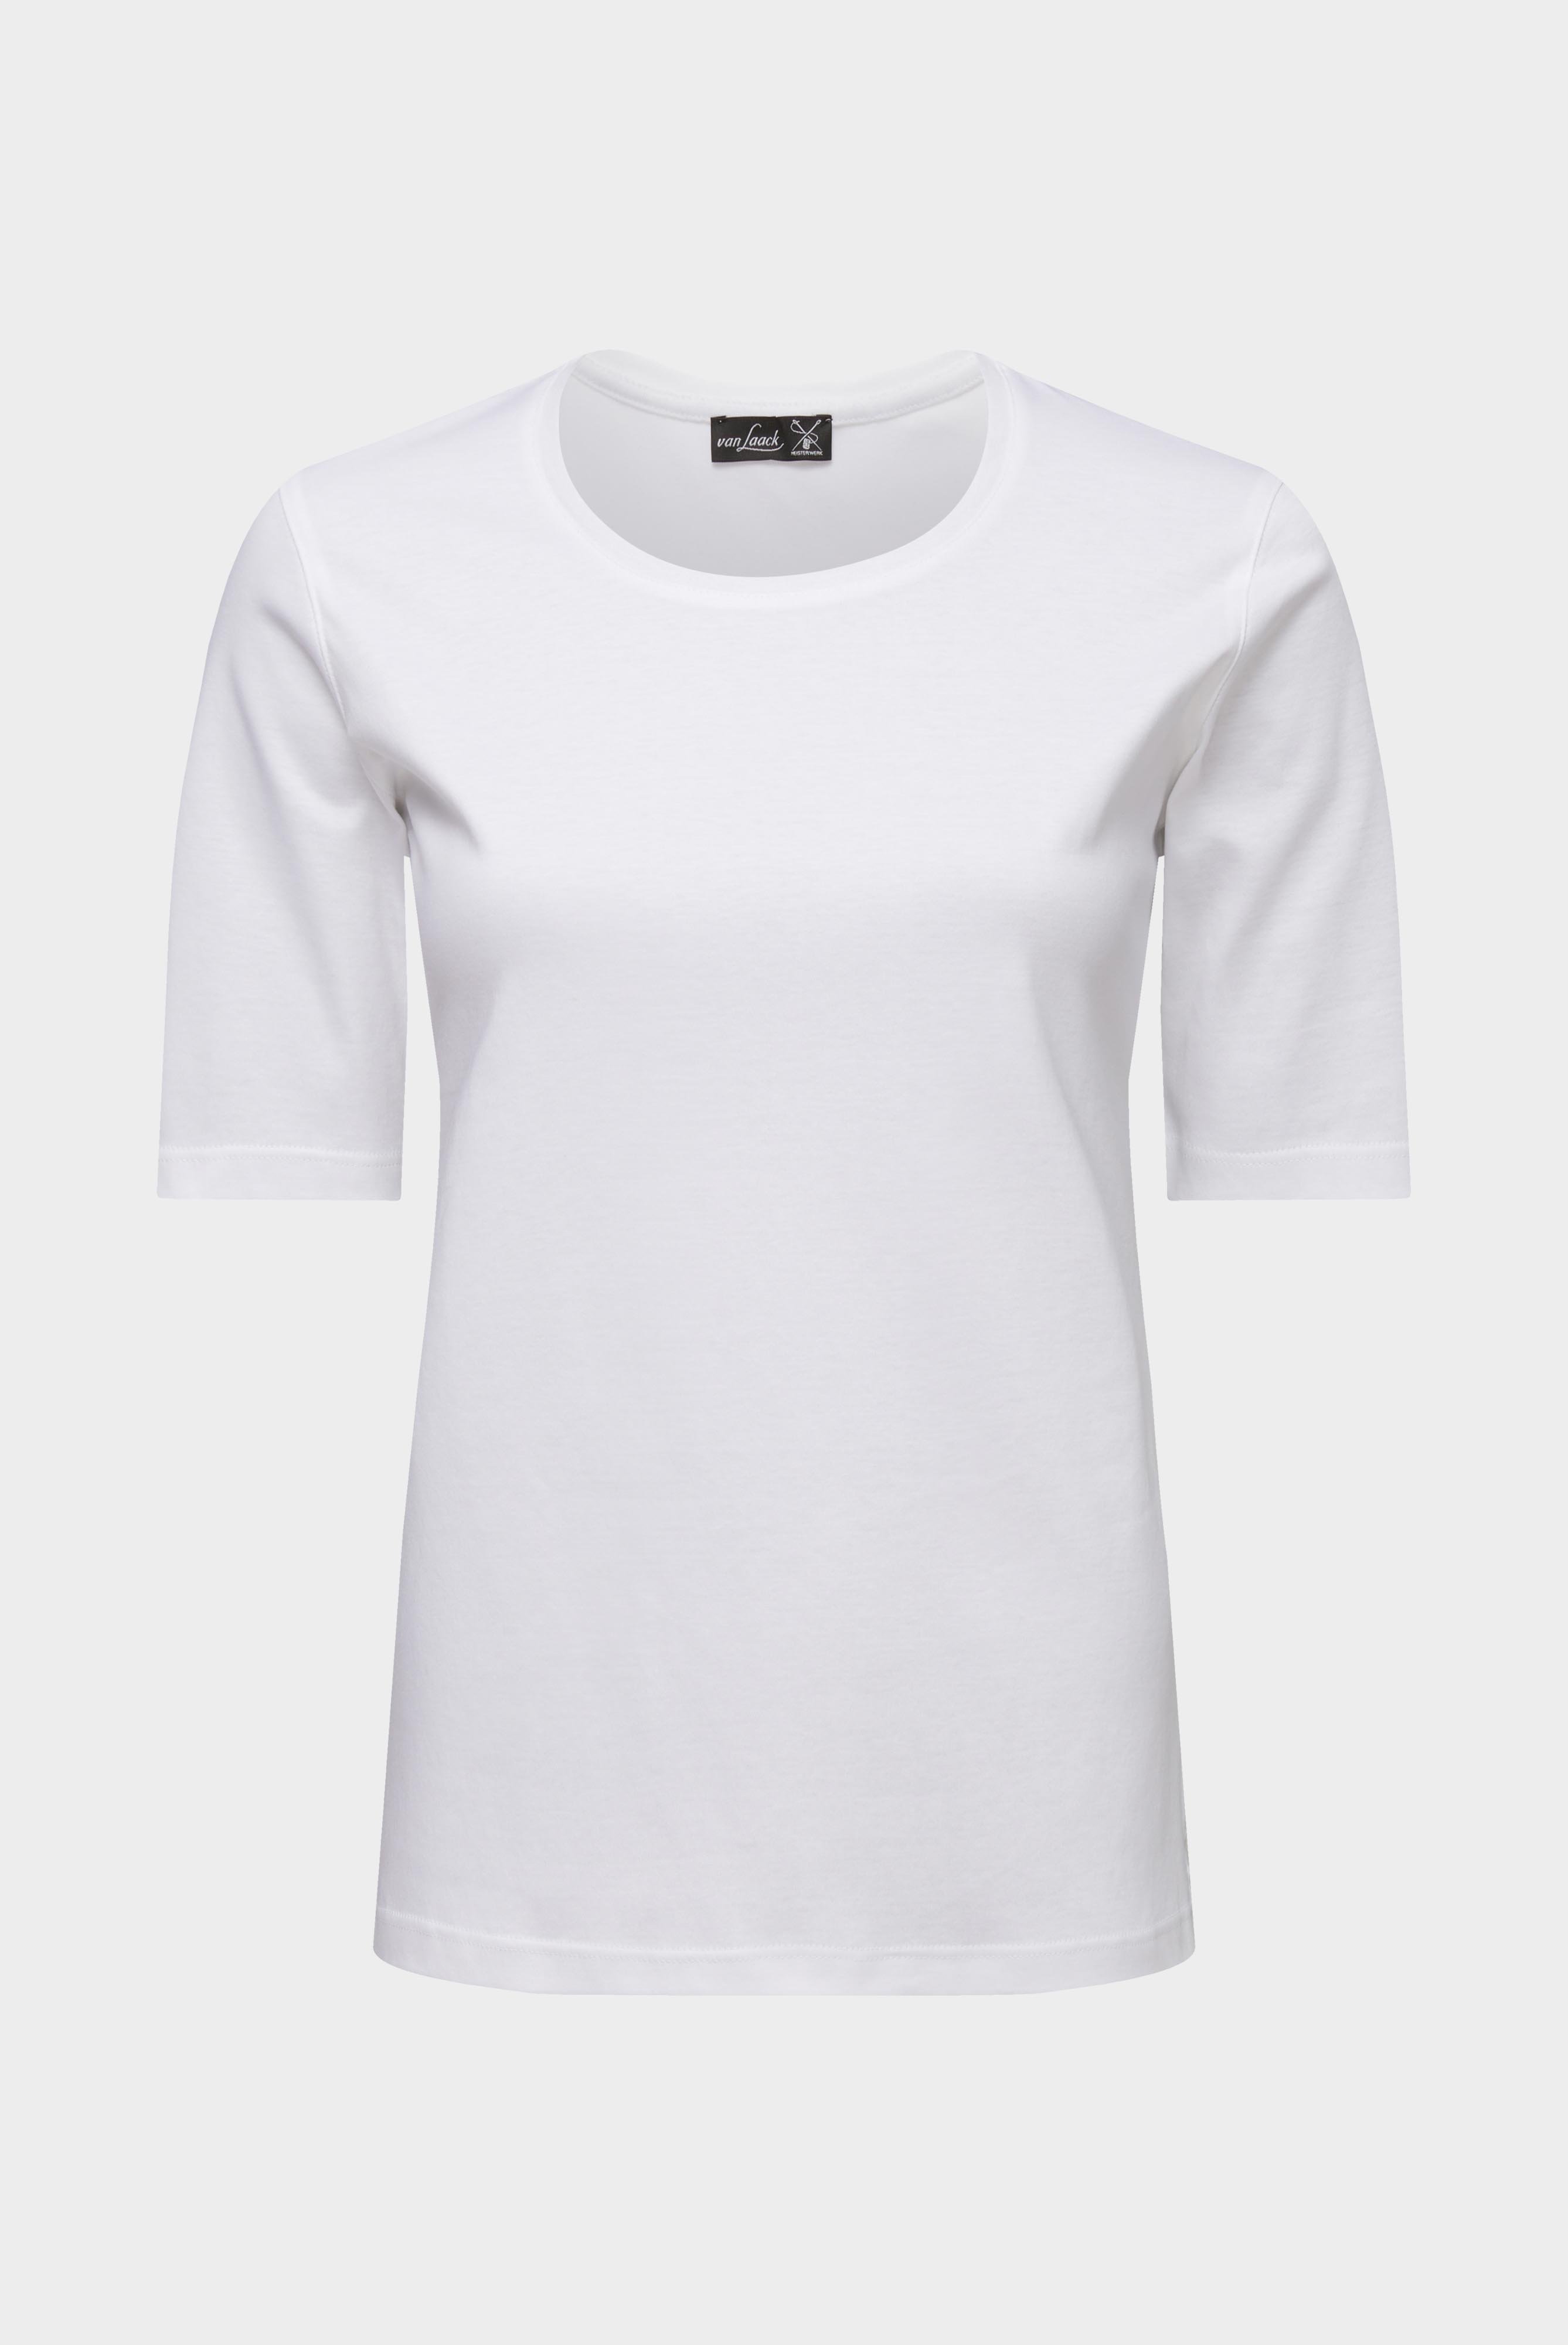 Tops & T-Shirts+Jersey T-Shirt+05.6386.18.180031.000.46